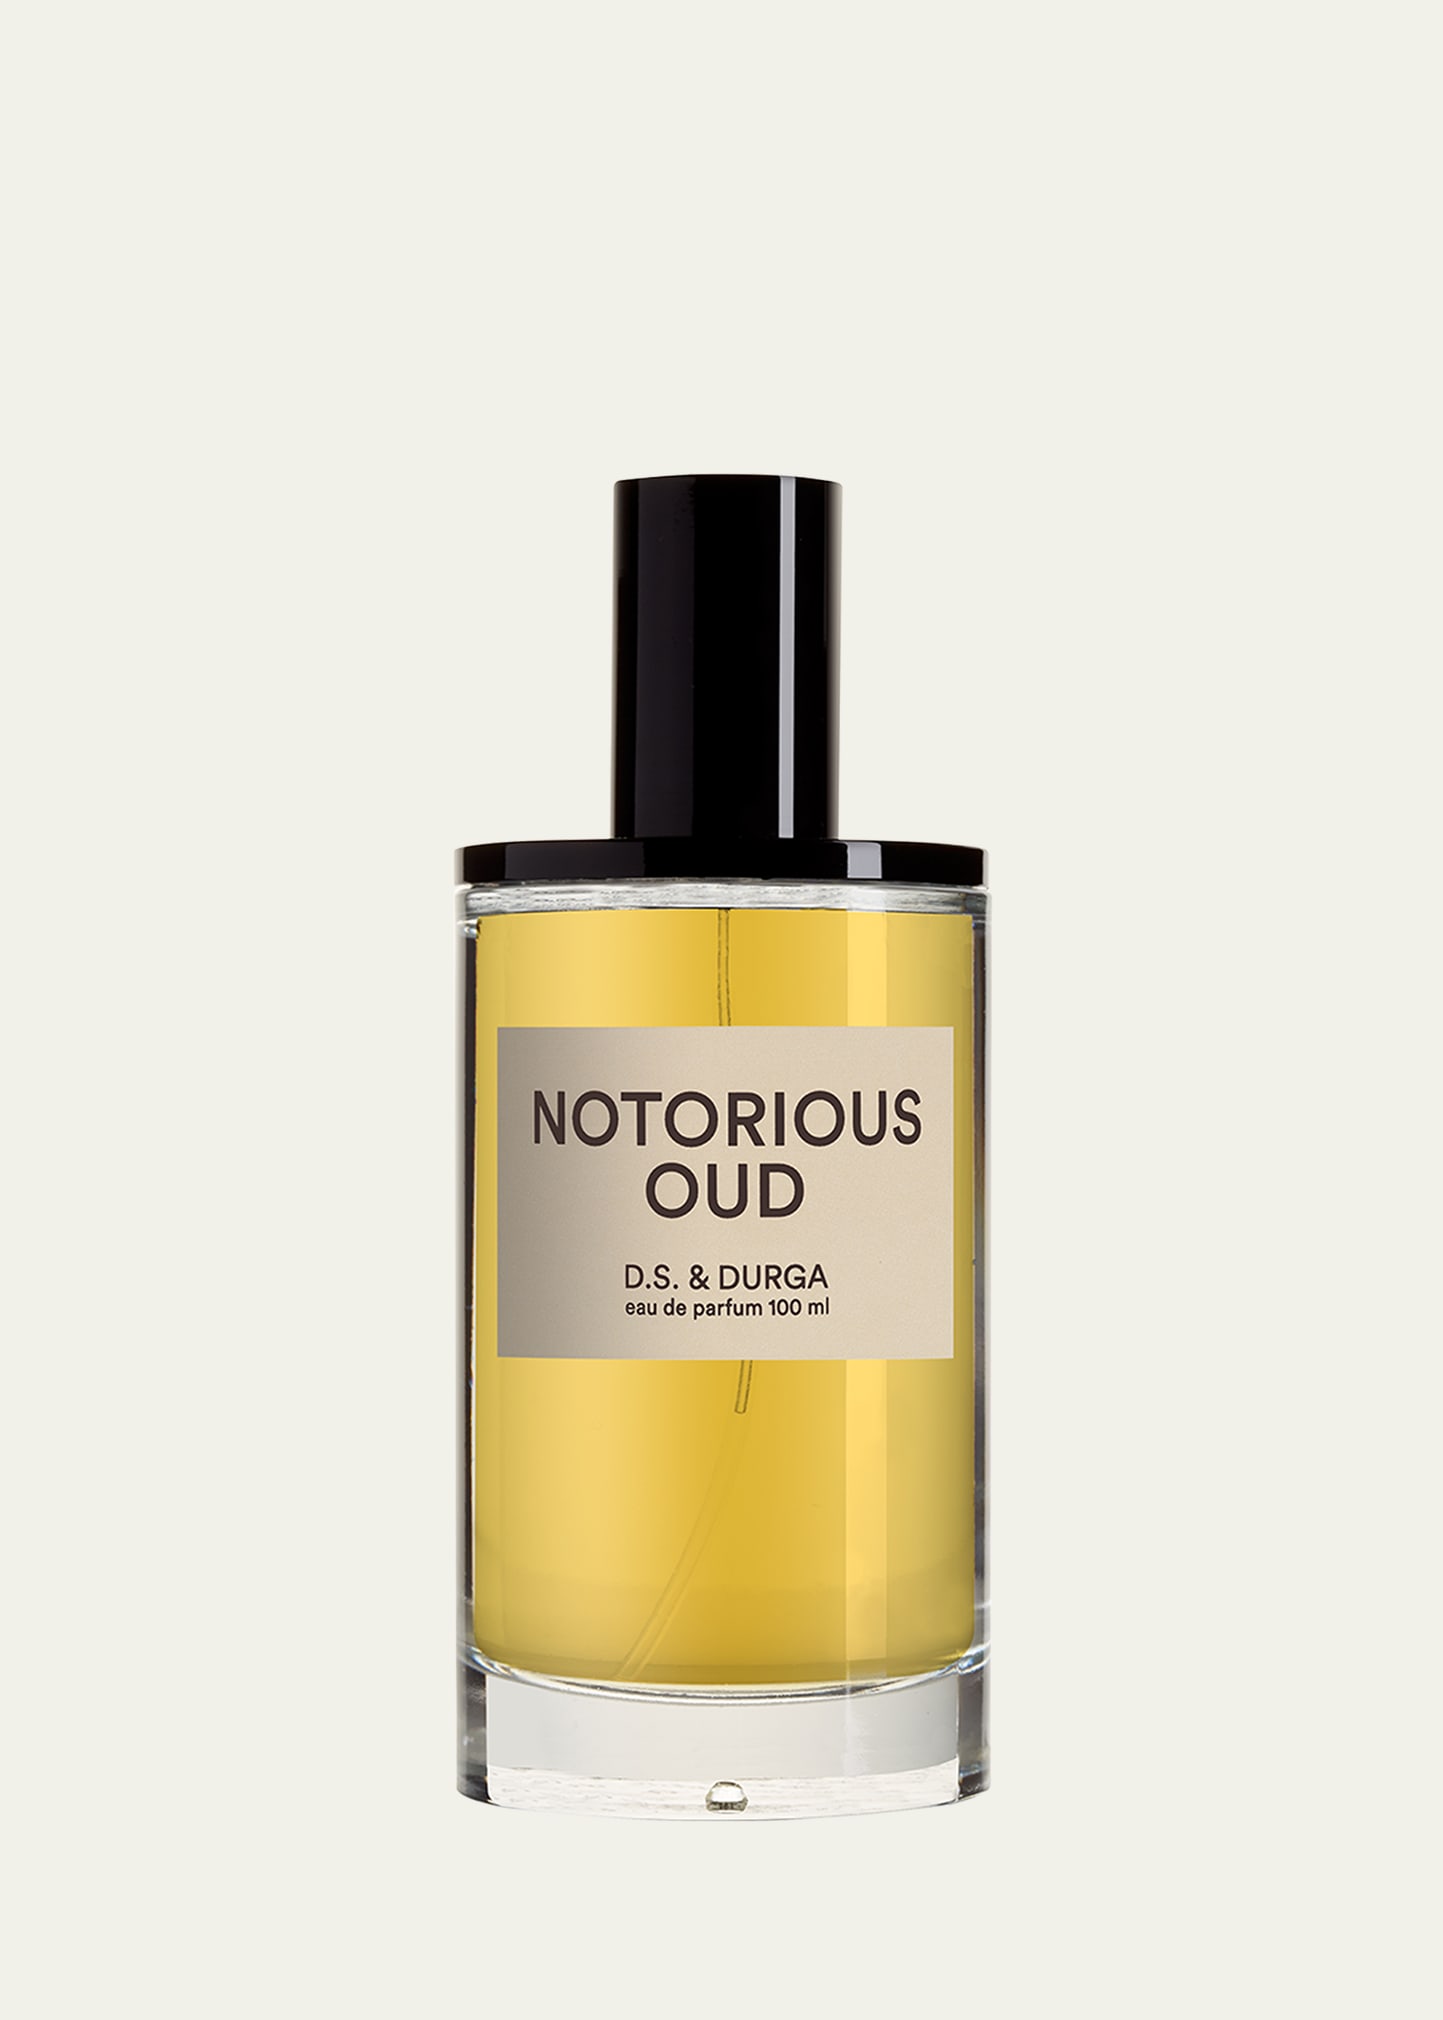 D.S. & DURGA Notorious Oud Eau de Parfum, 3.4 oz.